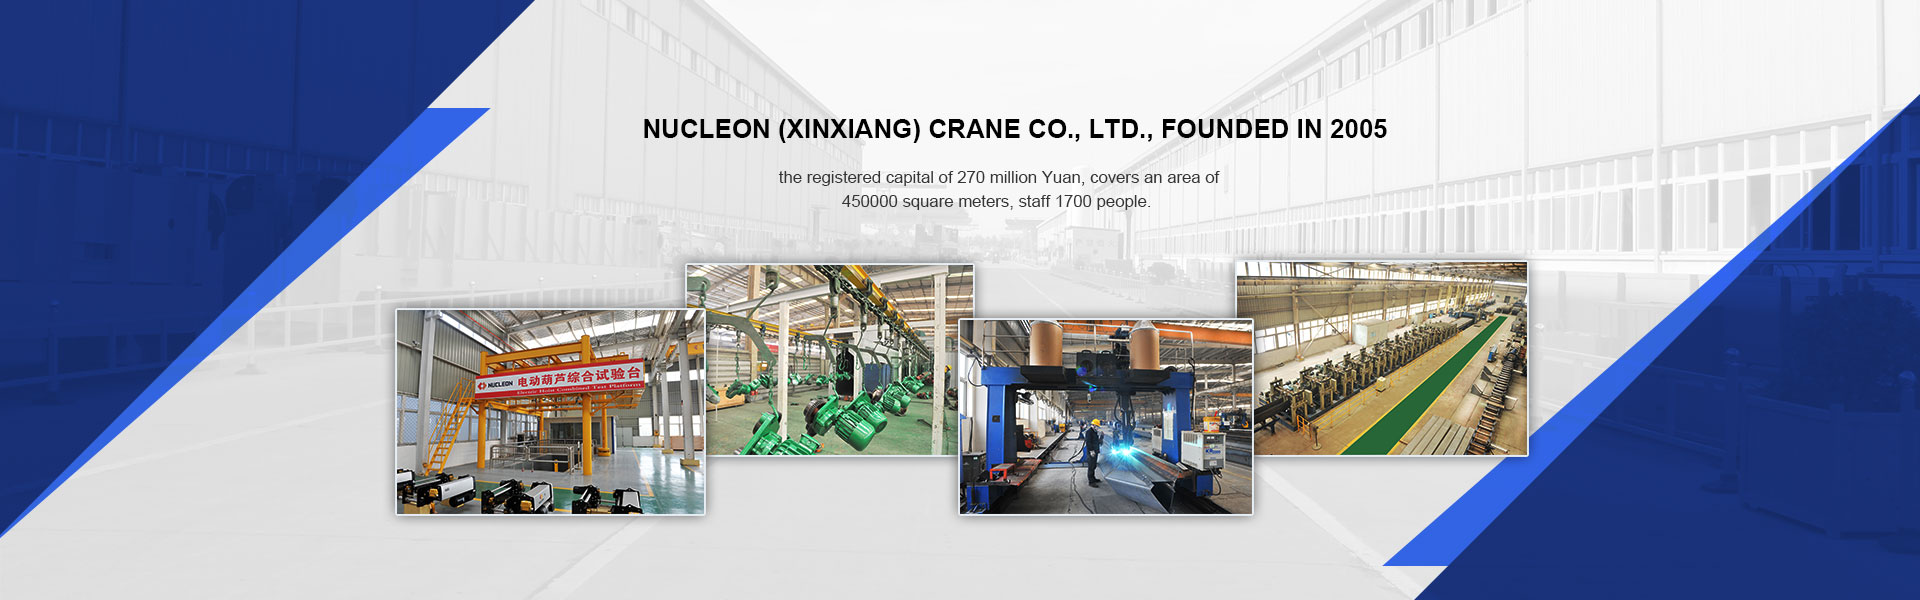 Nucleon(xinxiang) Crane Co., Ltd